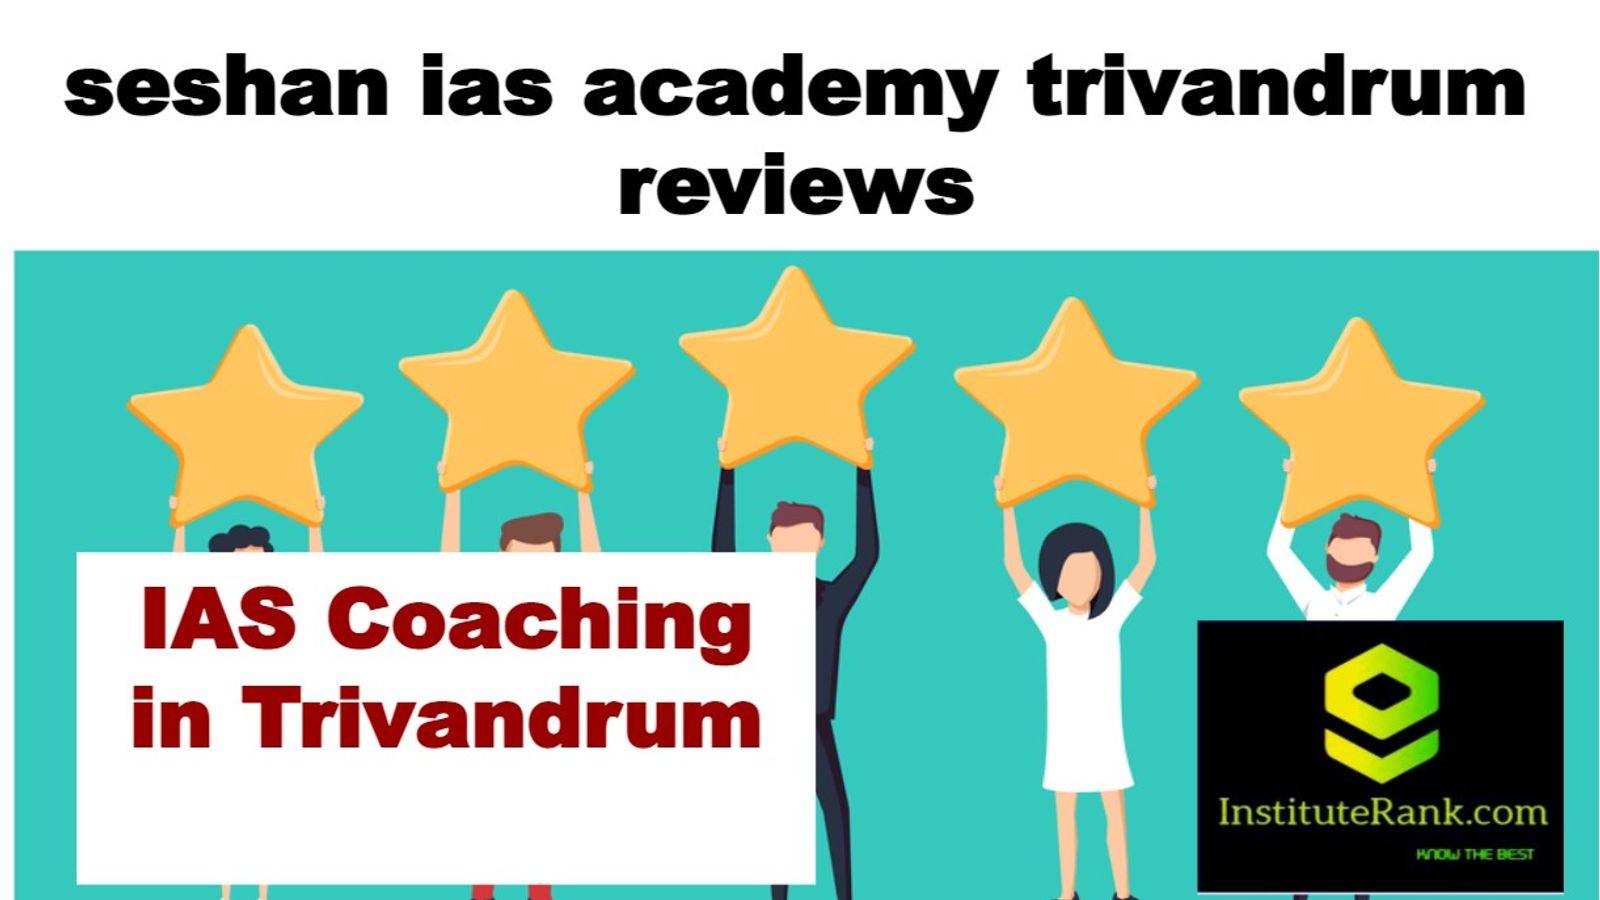 IAS Coaching in Trivandrum